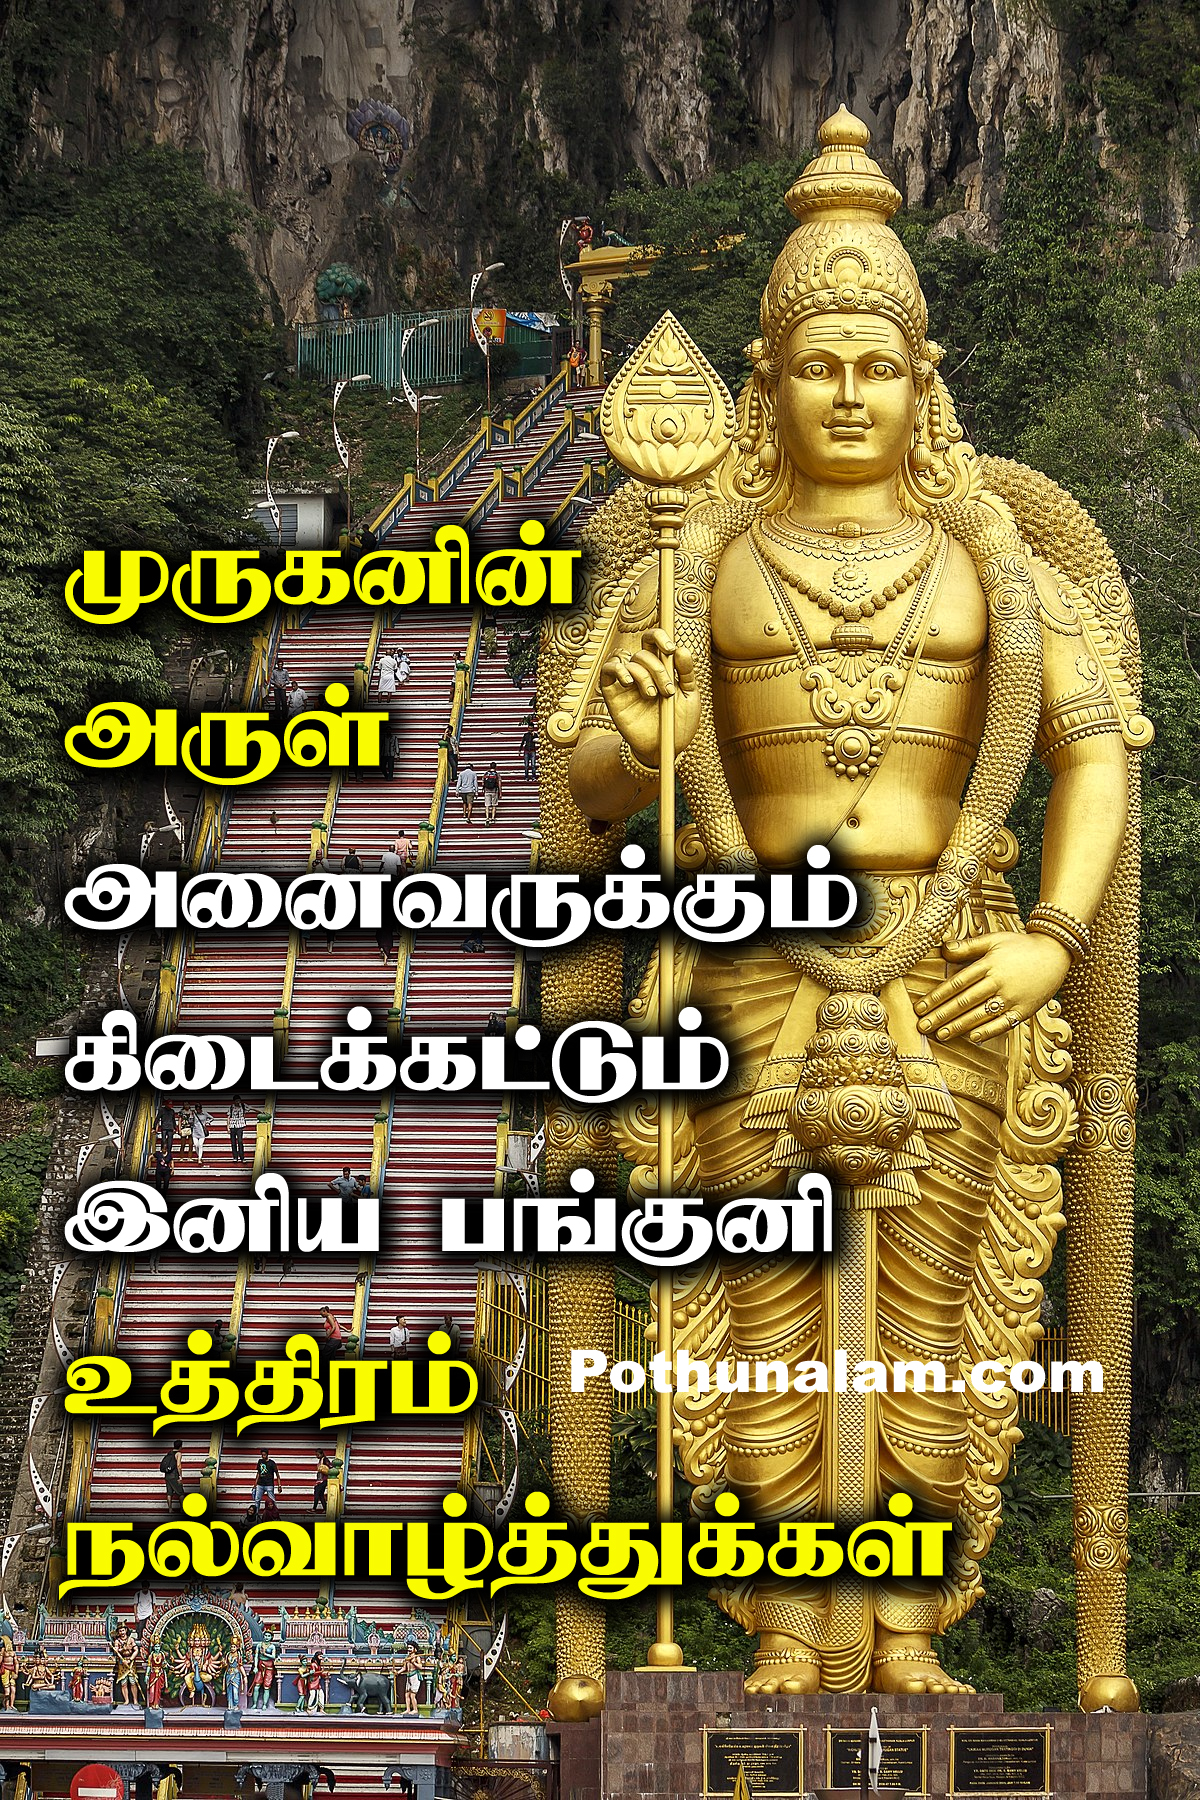 Panguni Uthiram Wishes in Tamil